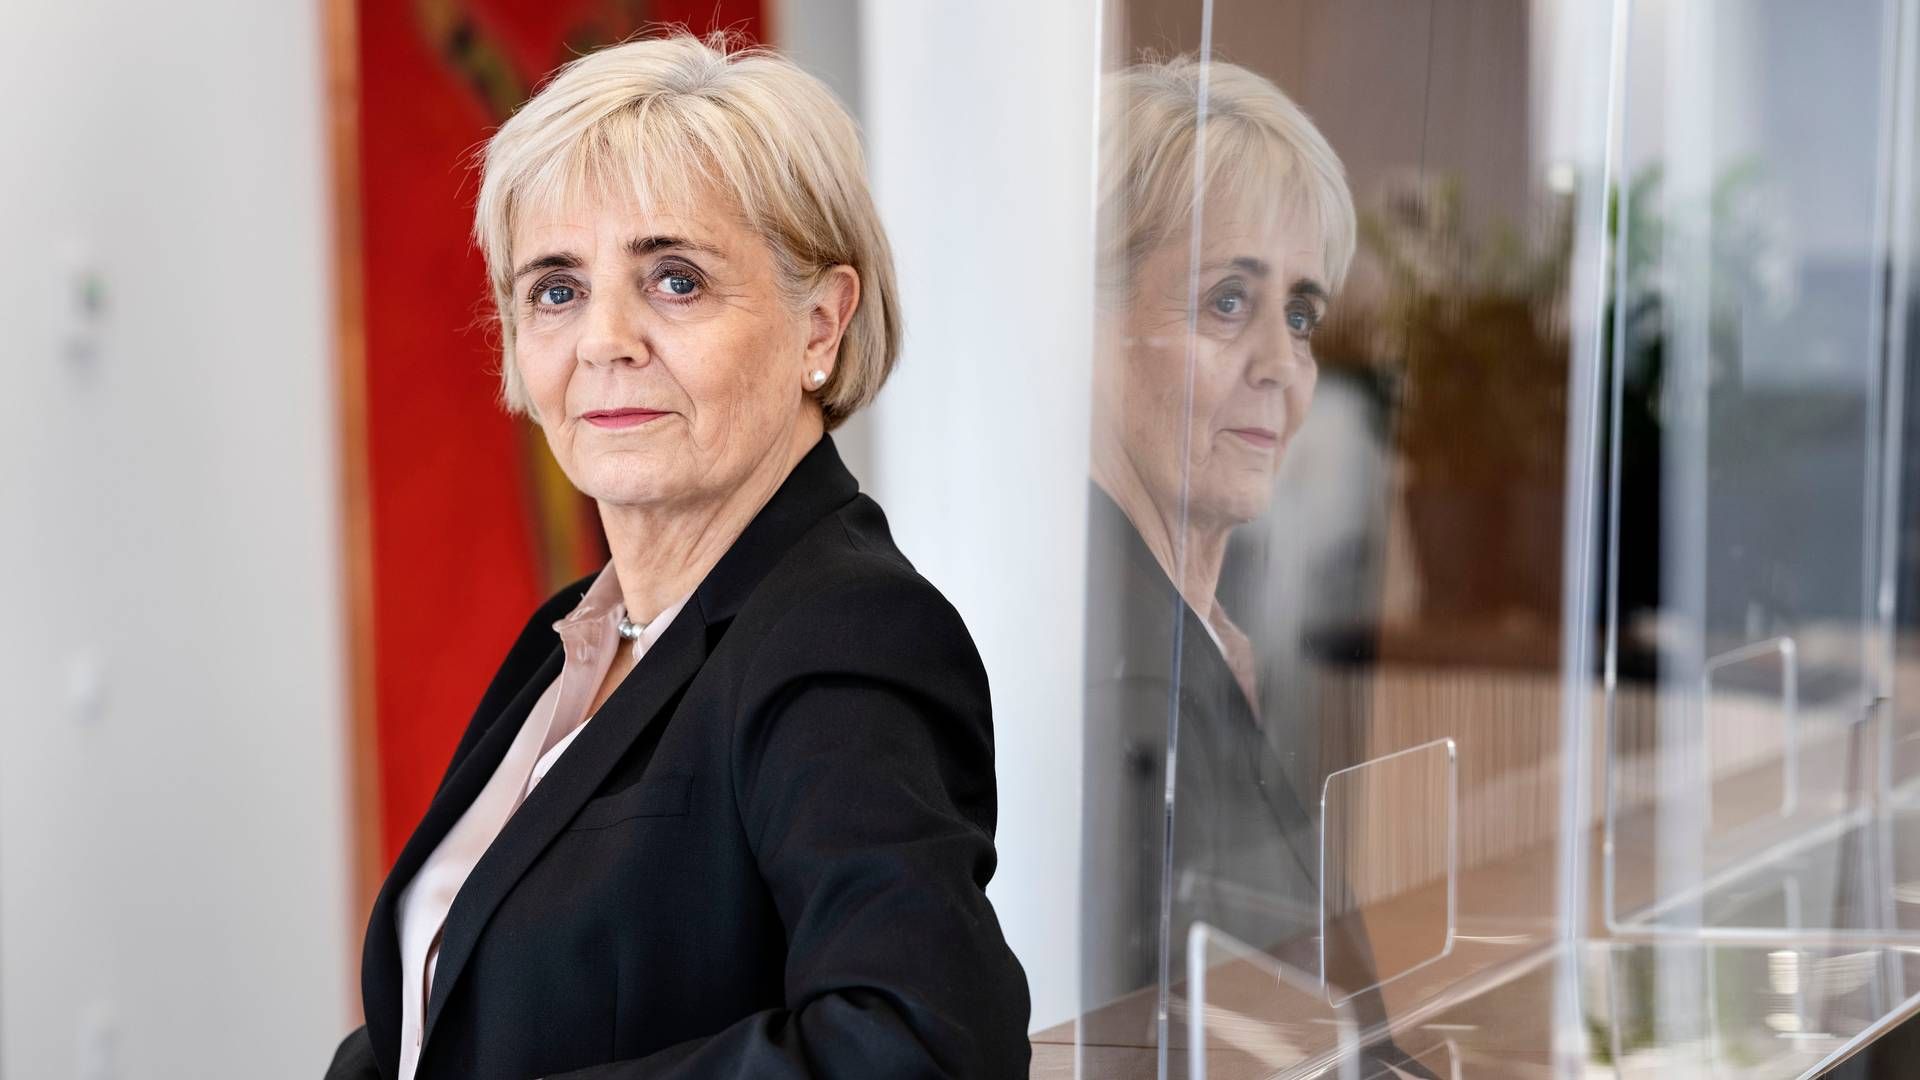 Den afgående adm. direktør i Sydbank, Karen Frøsig, indtræder 1. august i bestyrelserne i den familieejede danske skokoncern Ecco. | Foto: Les Kaner